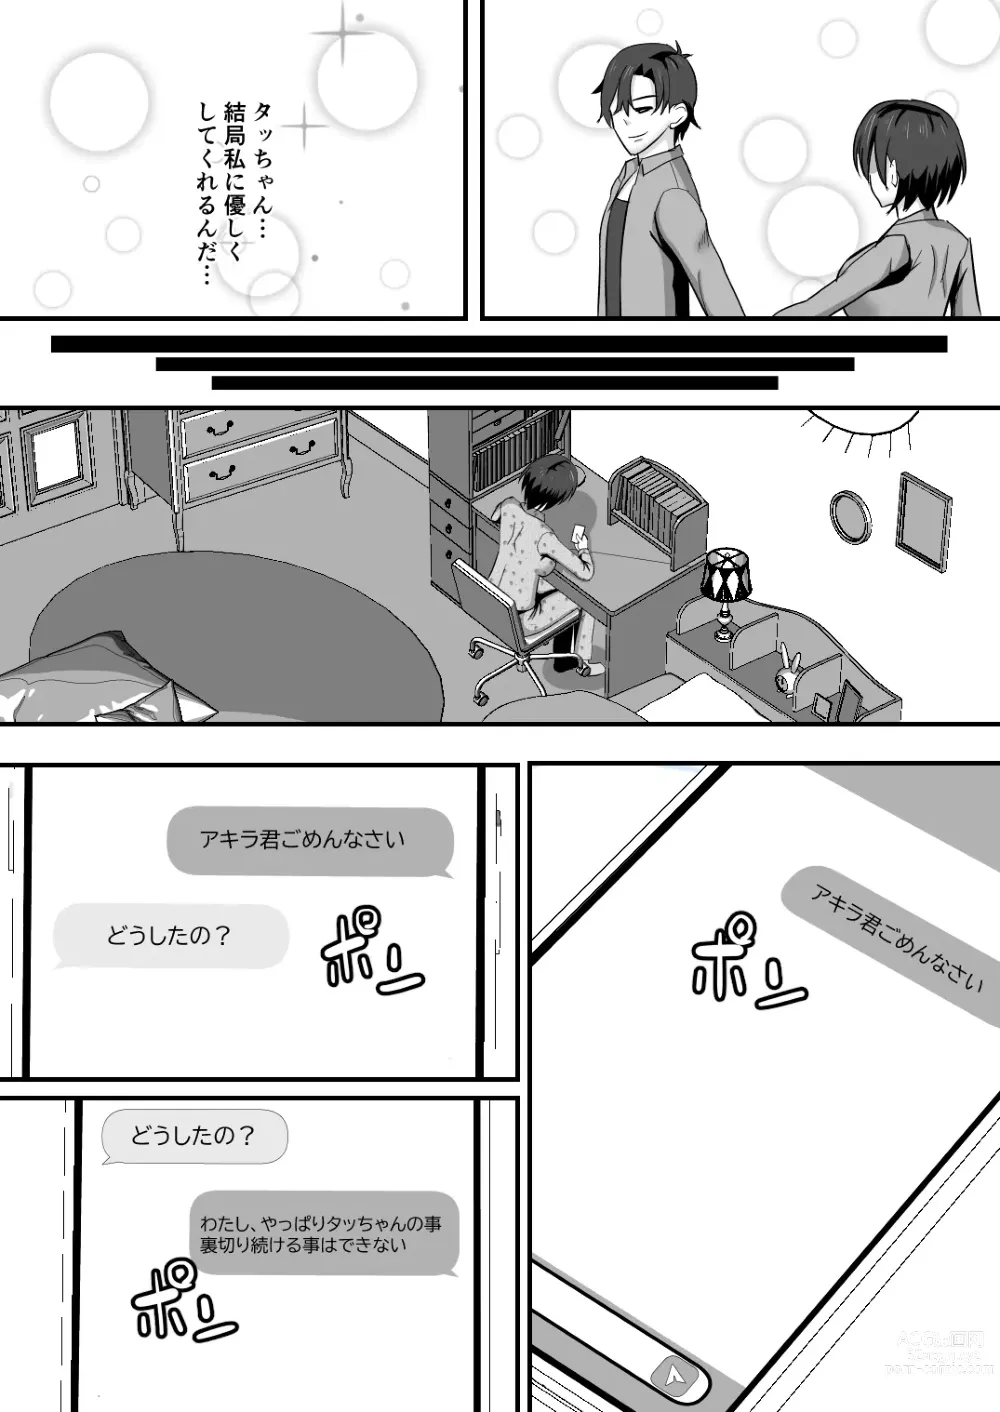 Page 56 of doujinshi Osananajimi wa netorare Heroine